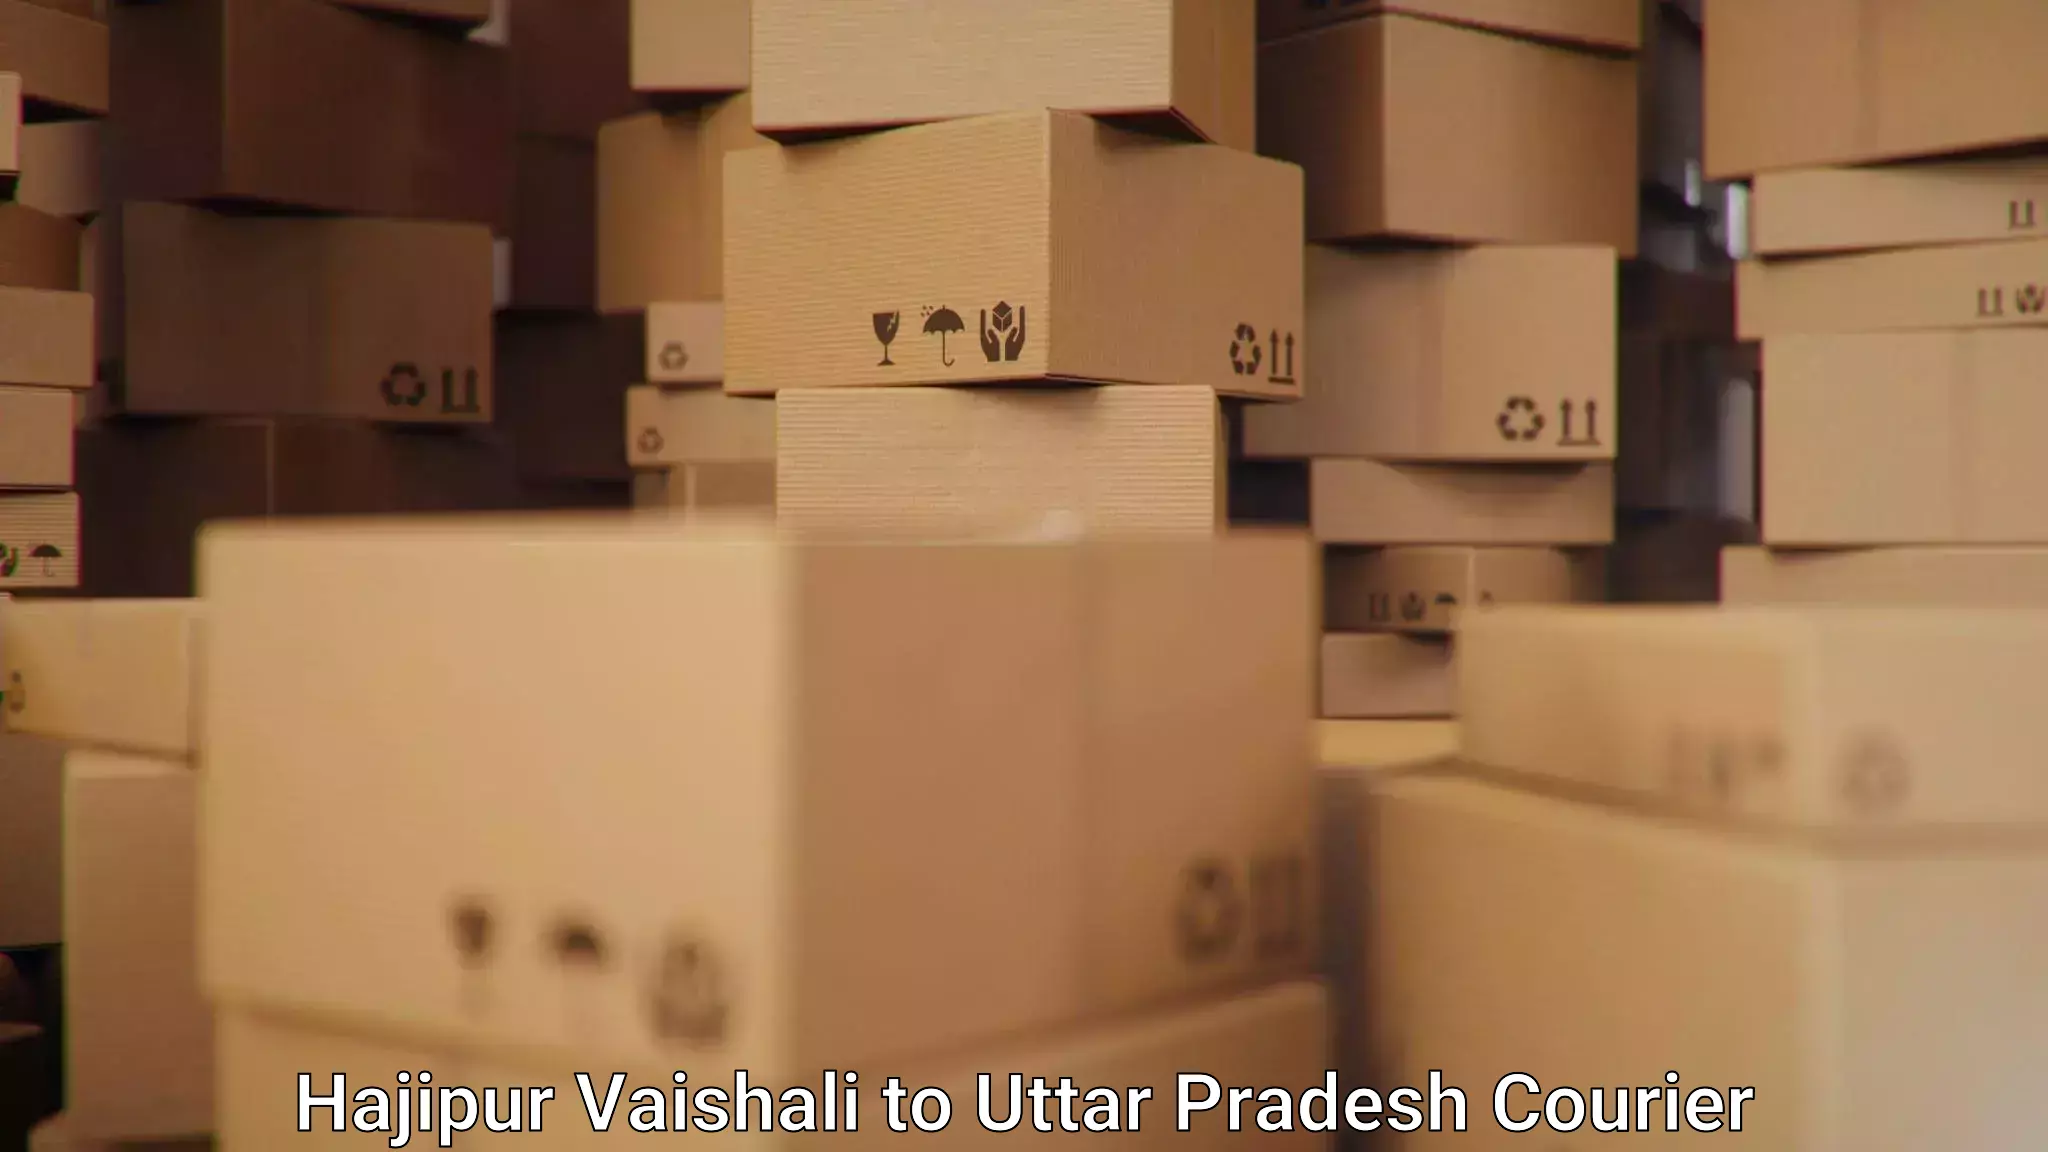 Express logistics service Hajipur Vaishali to Dudhinagar